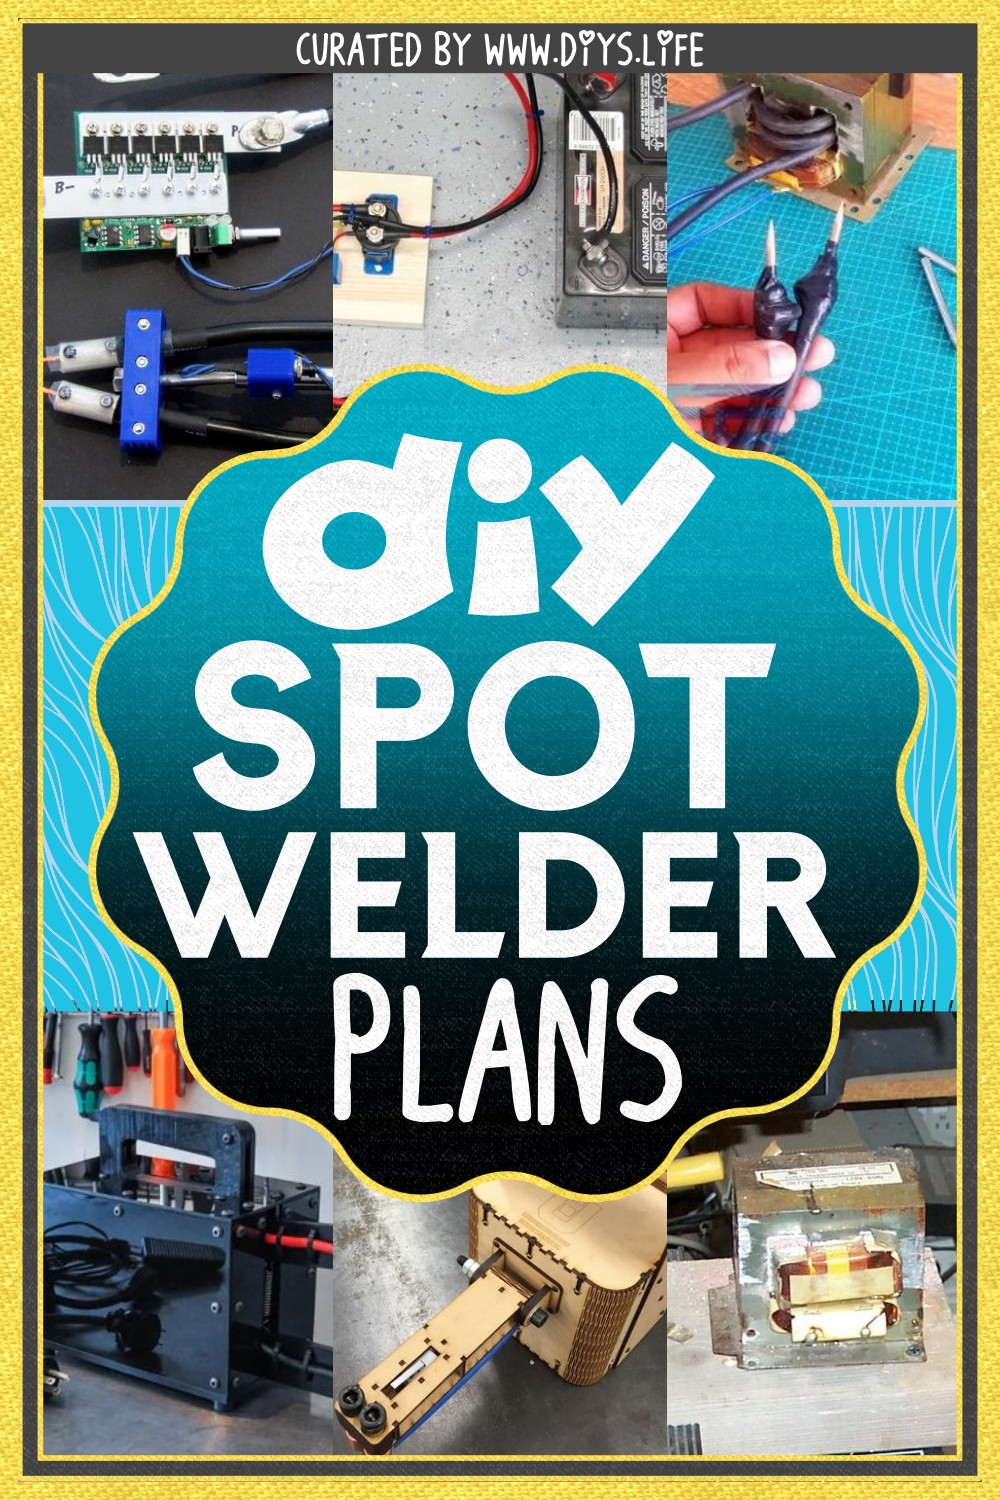 DIY Spot Welder Plans for welders